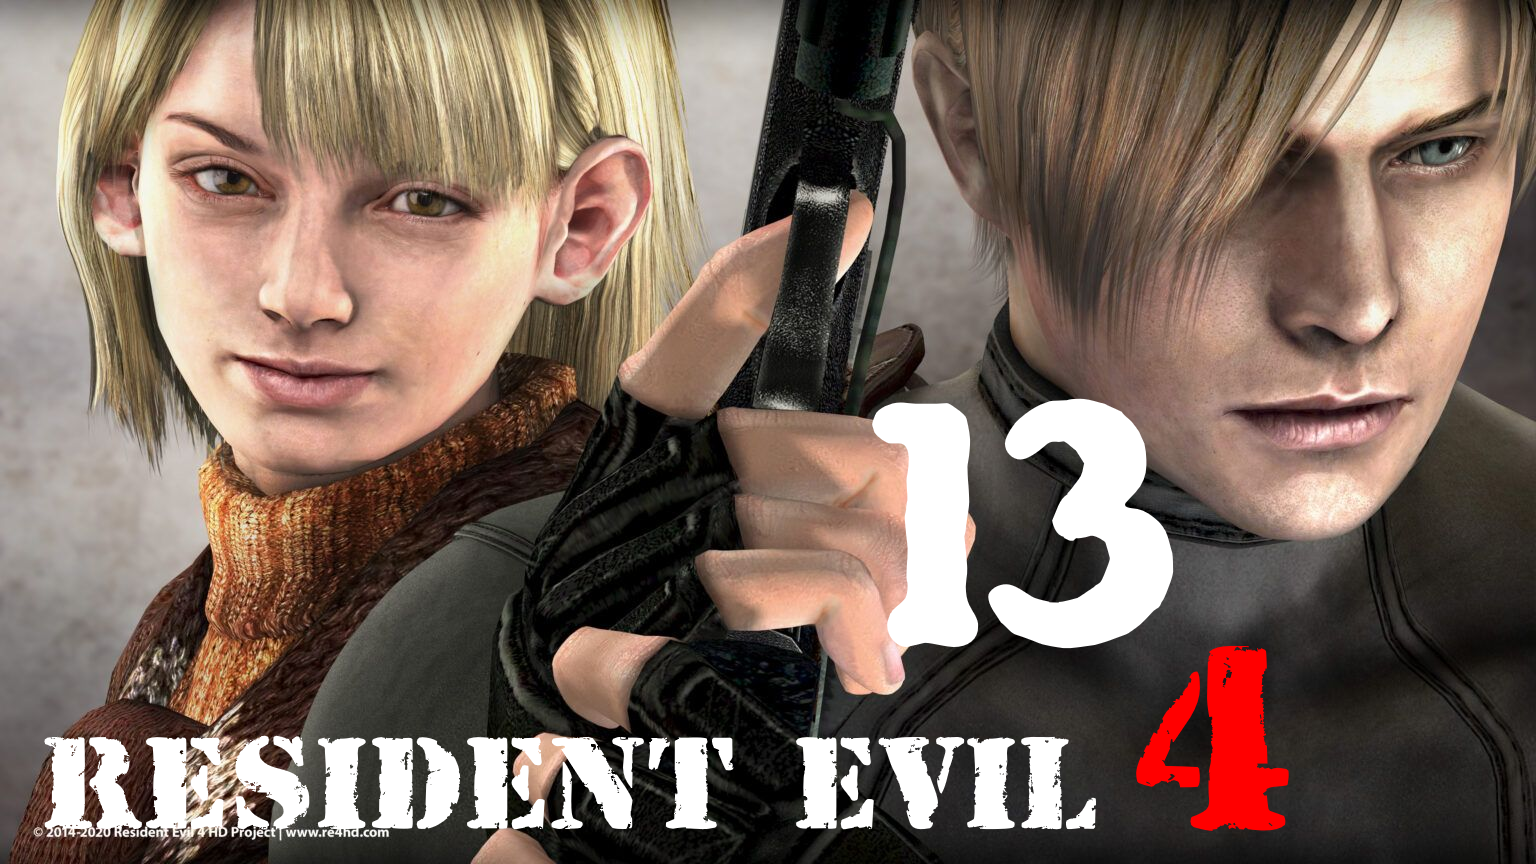 Resident Evil 4 HD Vs Леон С.Кеннеди .В поисках жертвенного камня(ключа)[часть 13] Уровень СПЕЦ